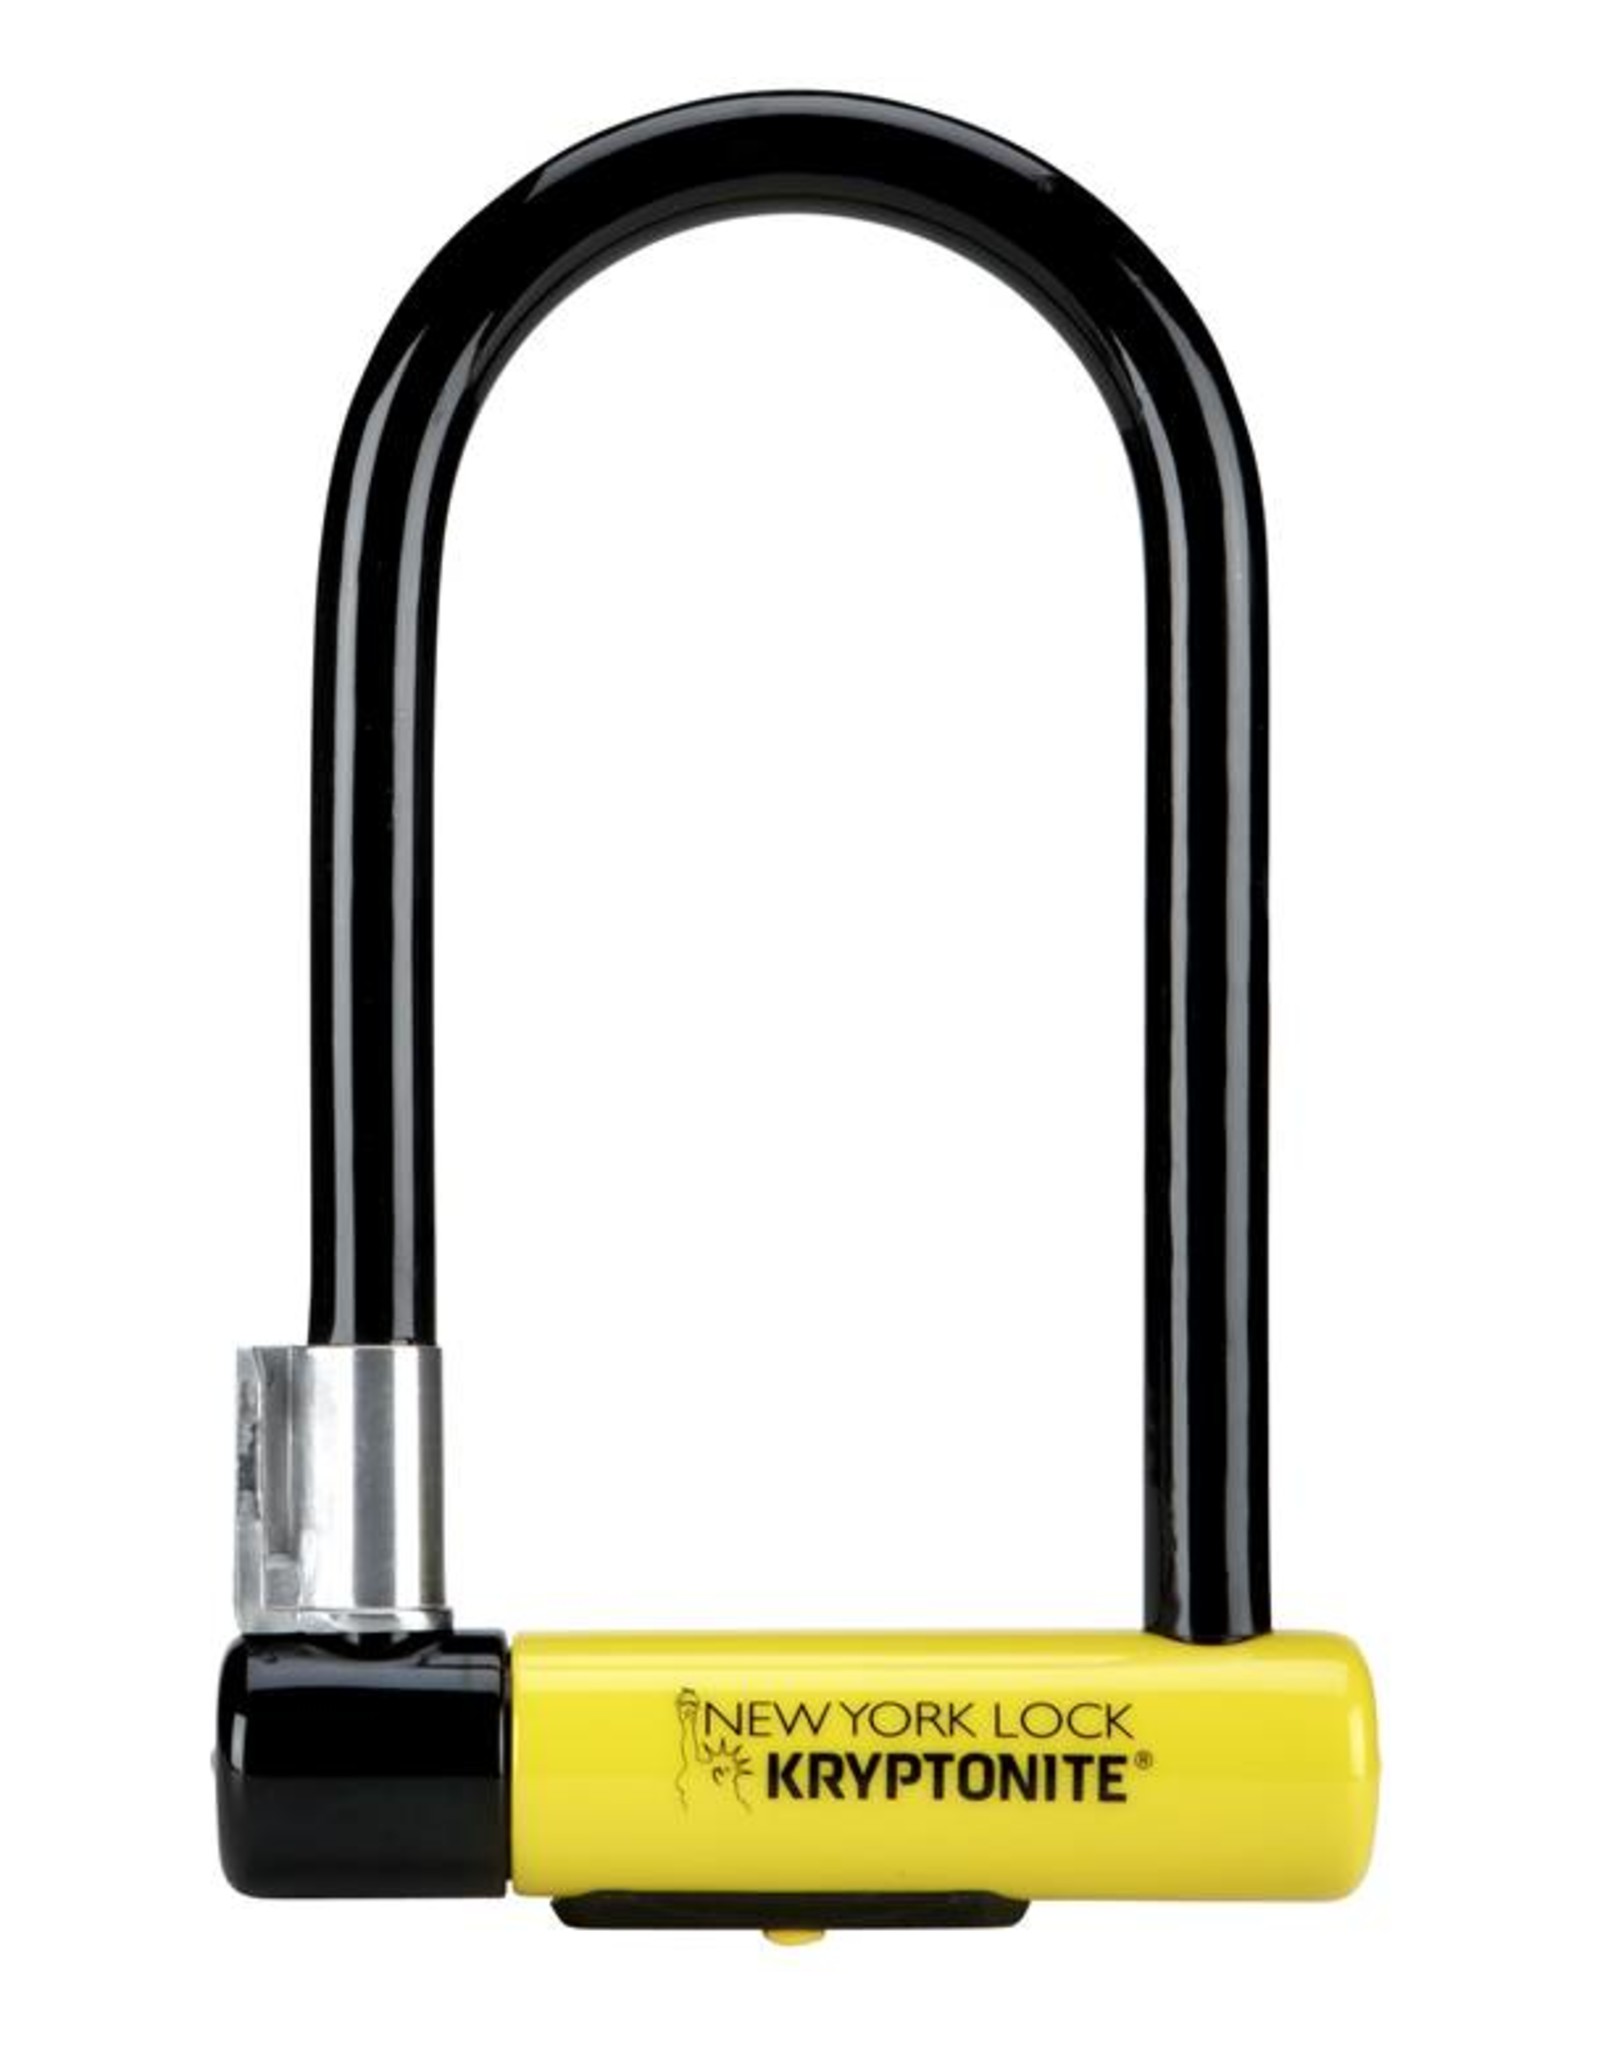 kryptonite lock stuck in bracket